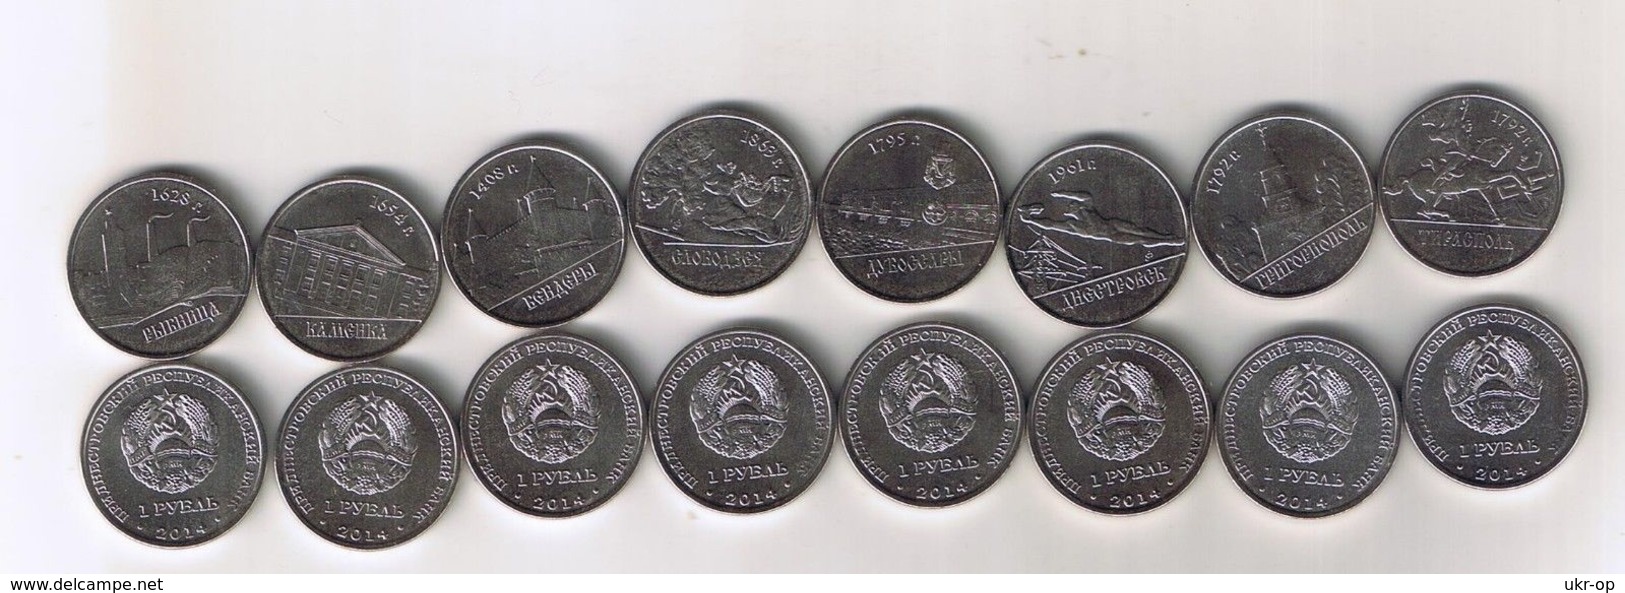 Transnistria - 1 Ruble Set 8 Coins 2014 UNC Ukr-OP - Moldavie